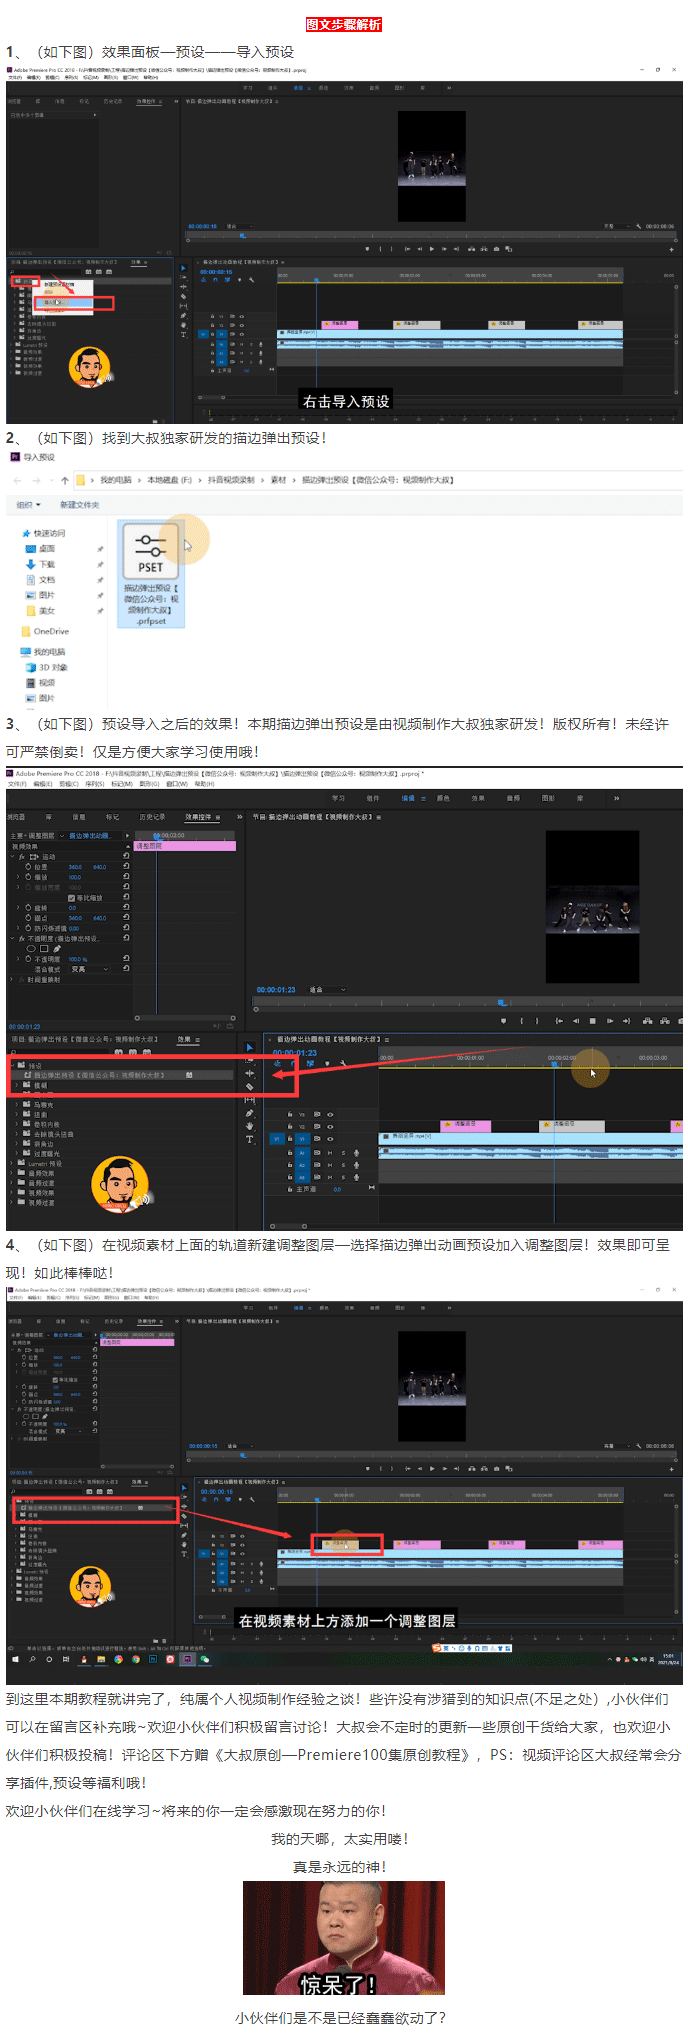 PR描边弹出动画预设安装使用视频教程！